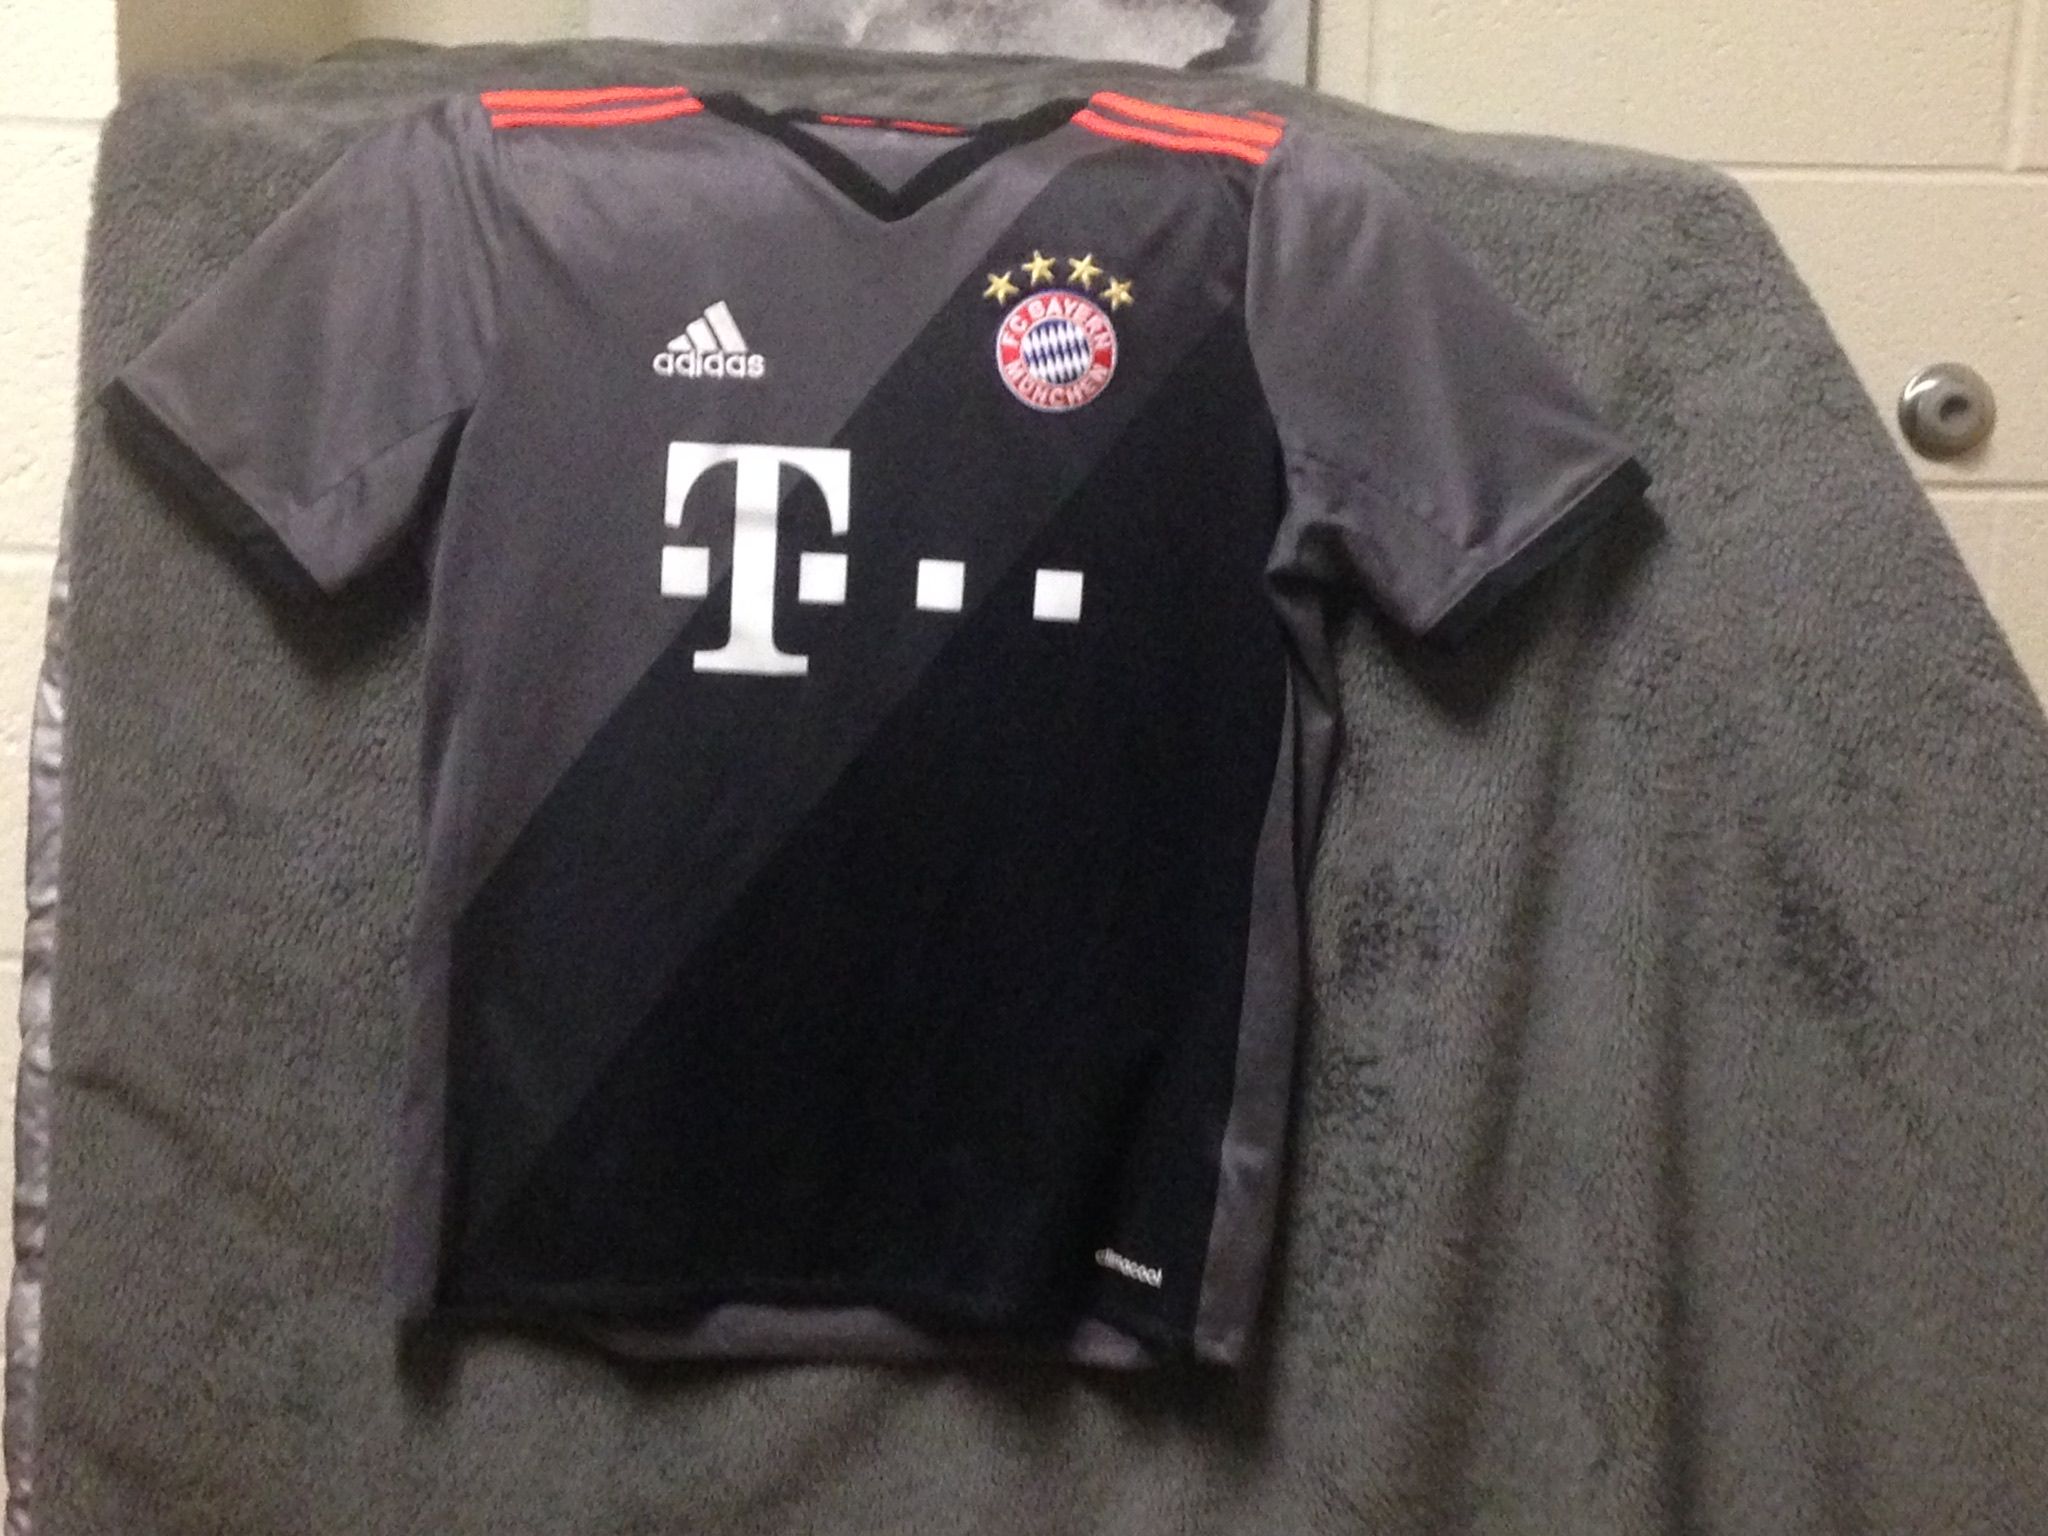 Bayern Munich jersey.